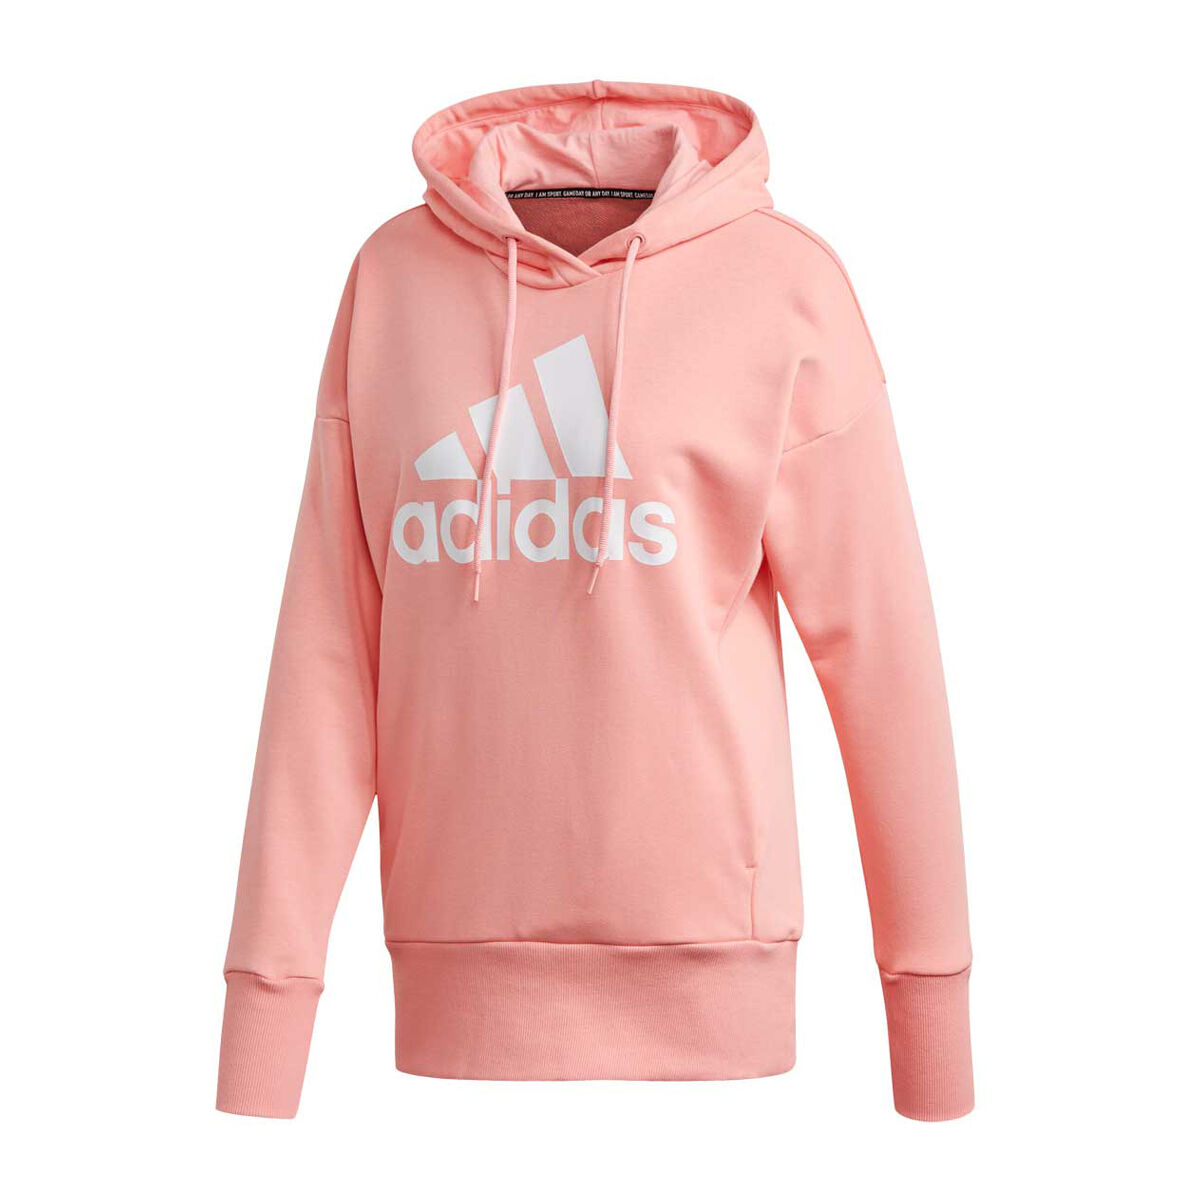 womens adidas hoodie pink